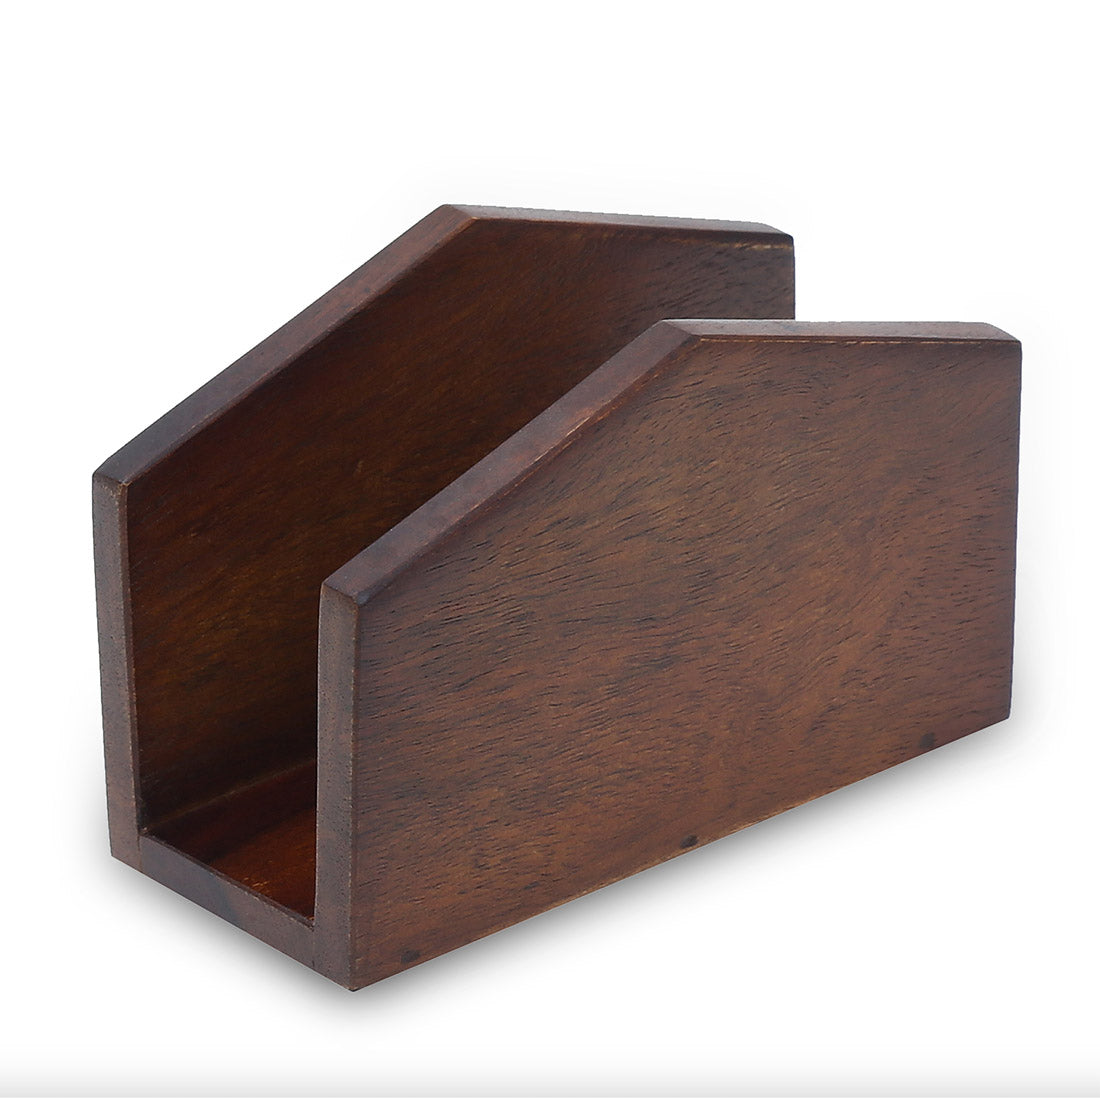 Tissue holder ( wooden ) — Cone